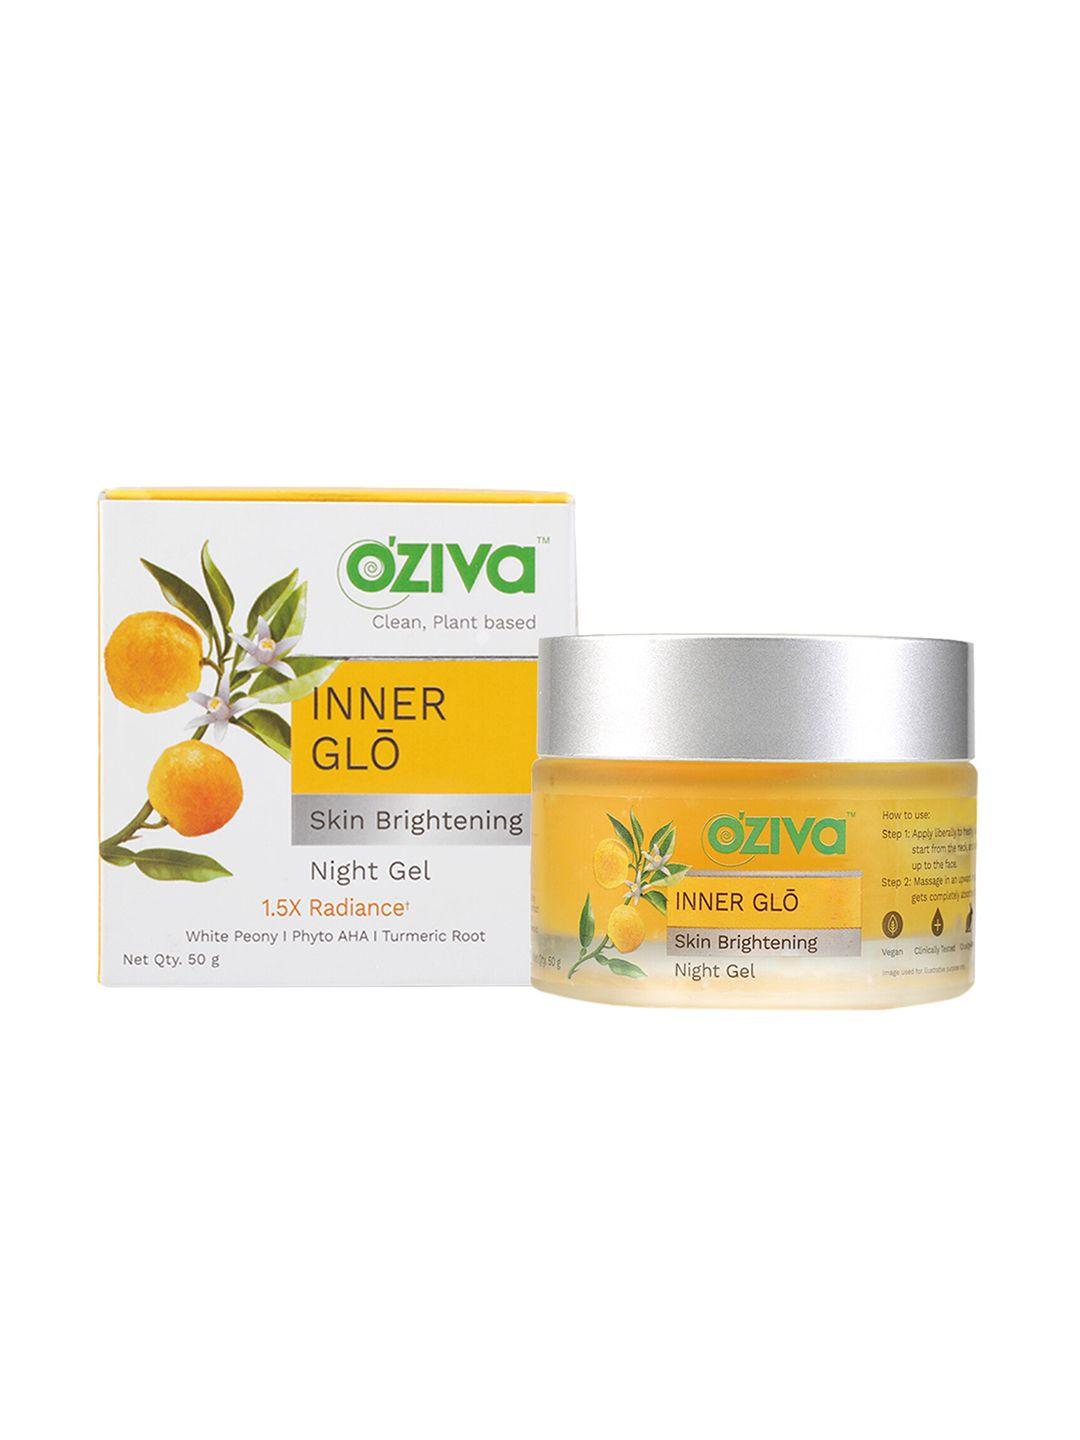 oziva inner glo skin brightening night gel with white peony & turmeric root - 50 g